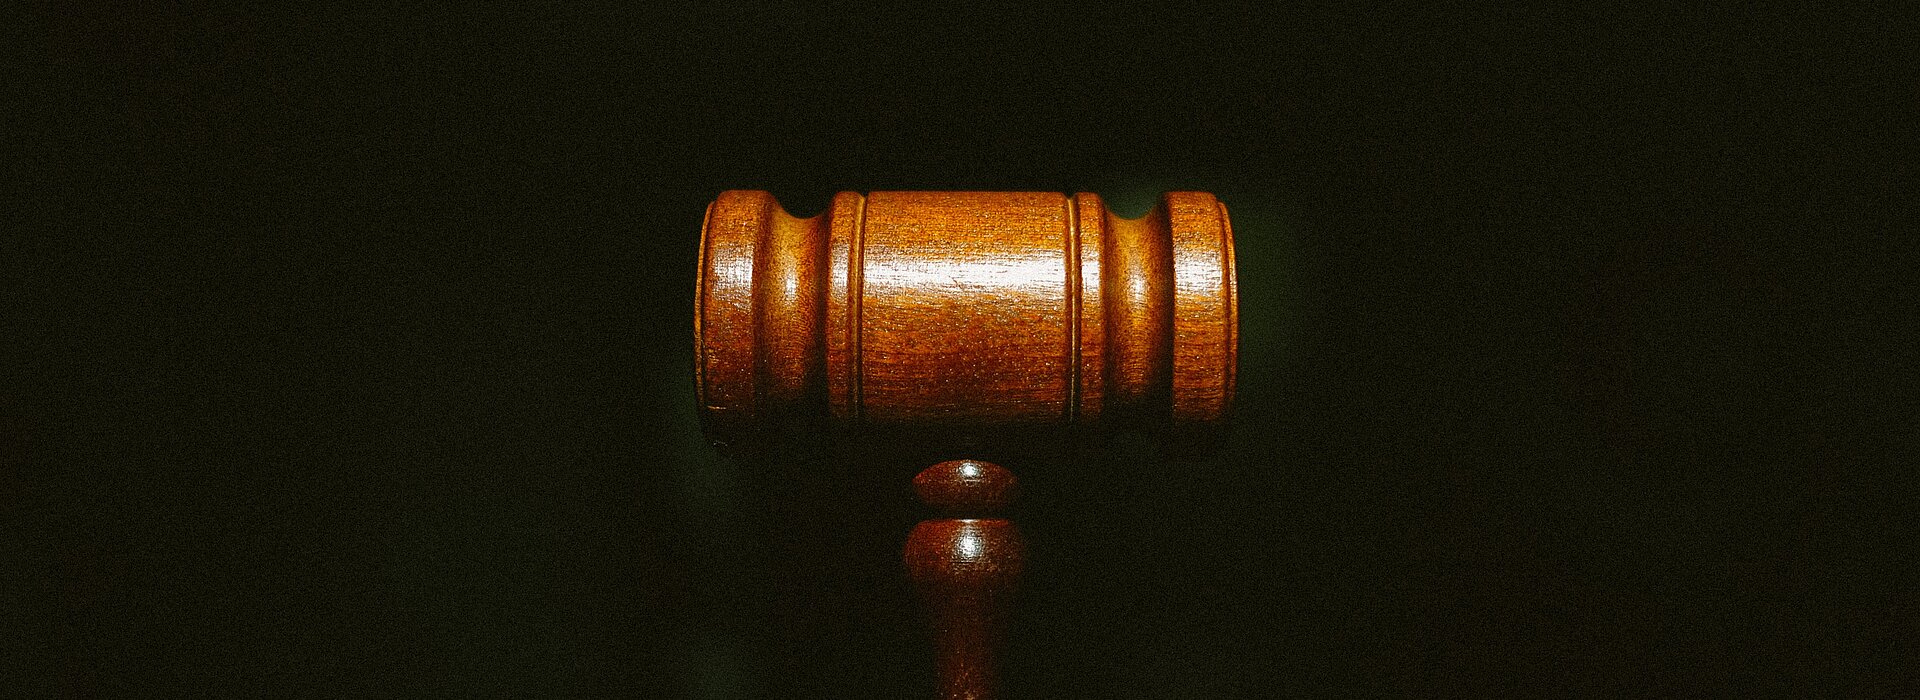 Na foto um malhete marrom, o famoso martelo utilizado pelo juiz, está centralizado no meio. O fundo é todo escuro e o foco está somente no martelo.